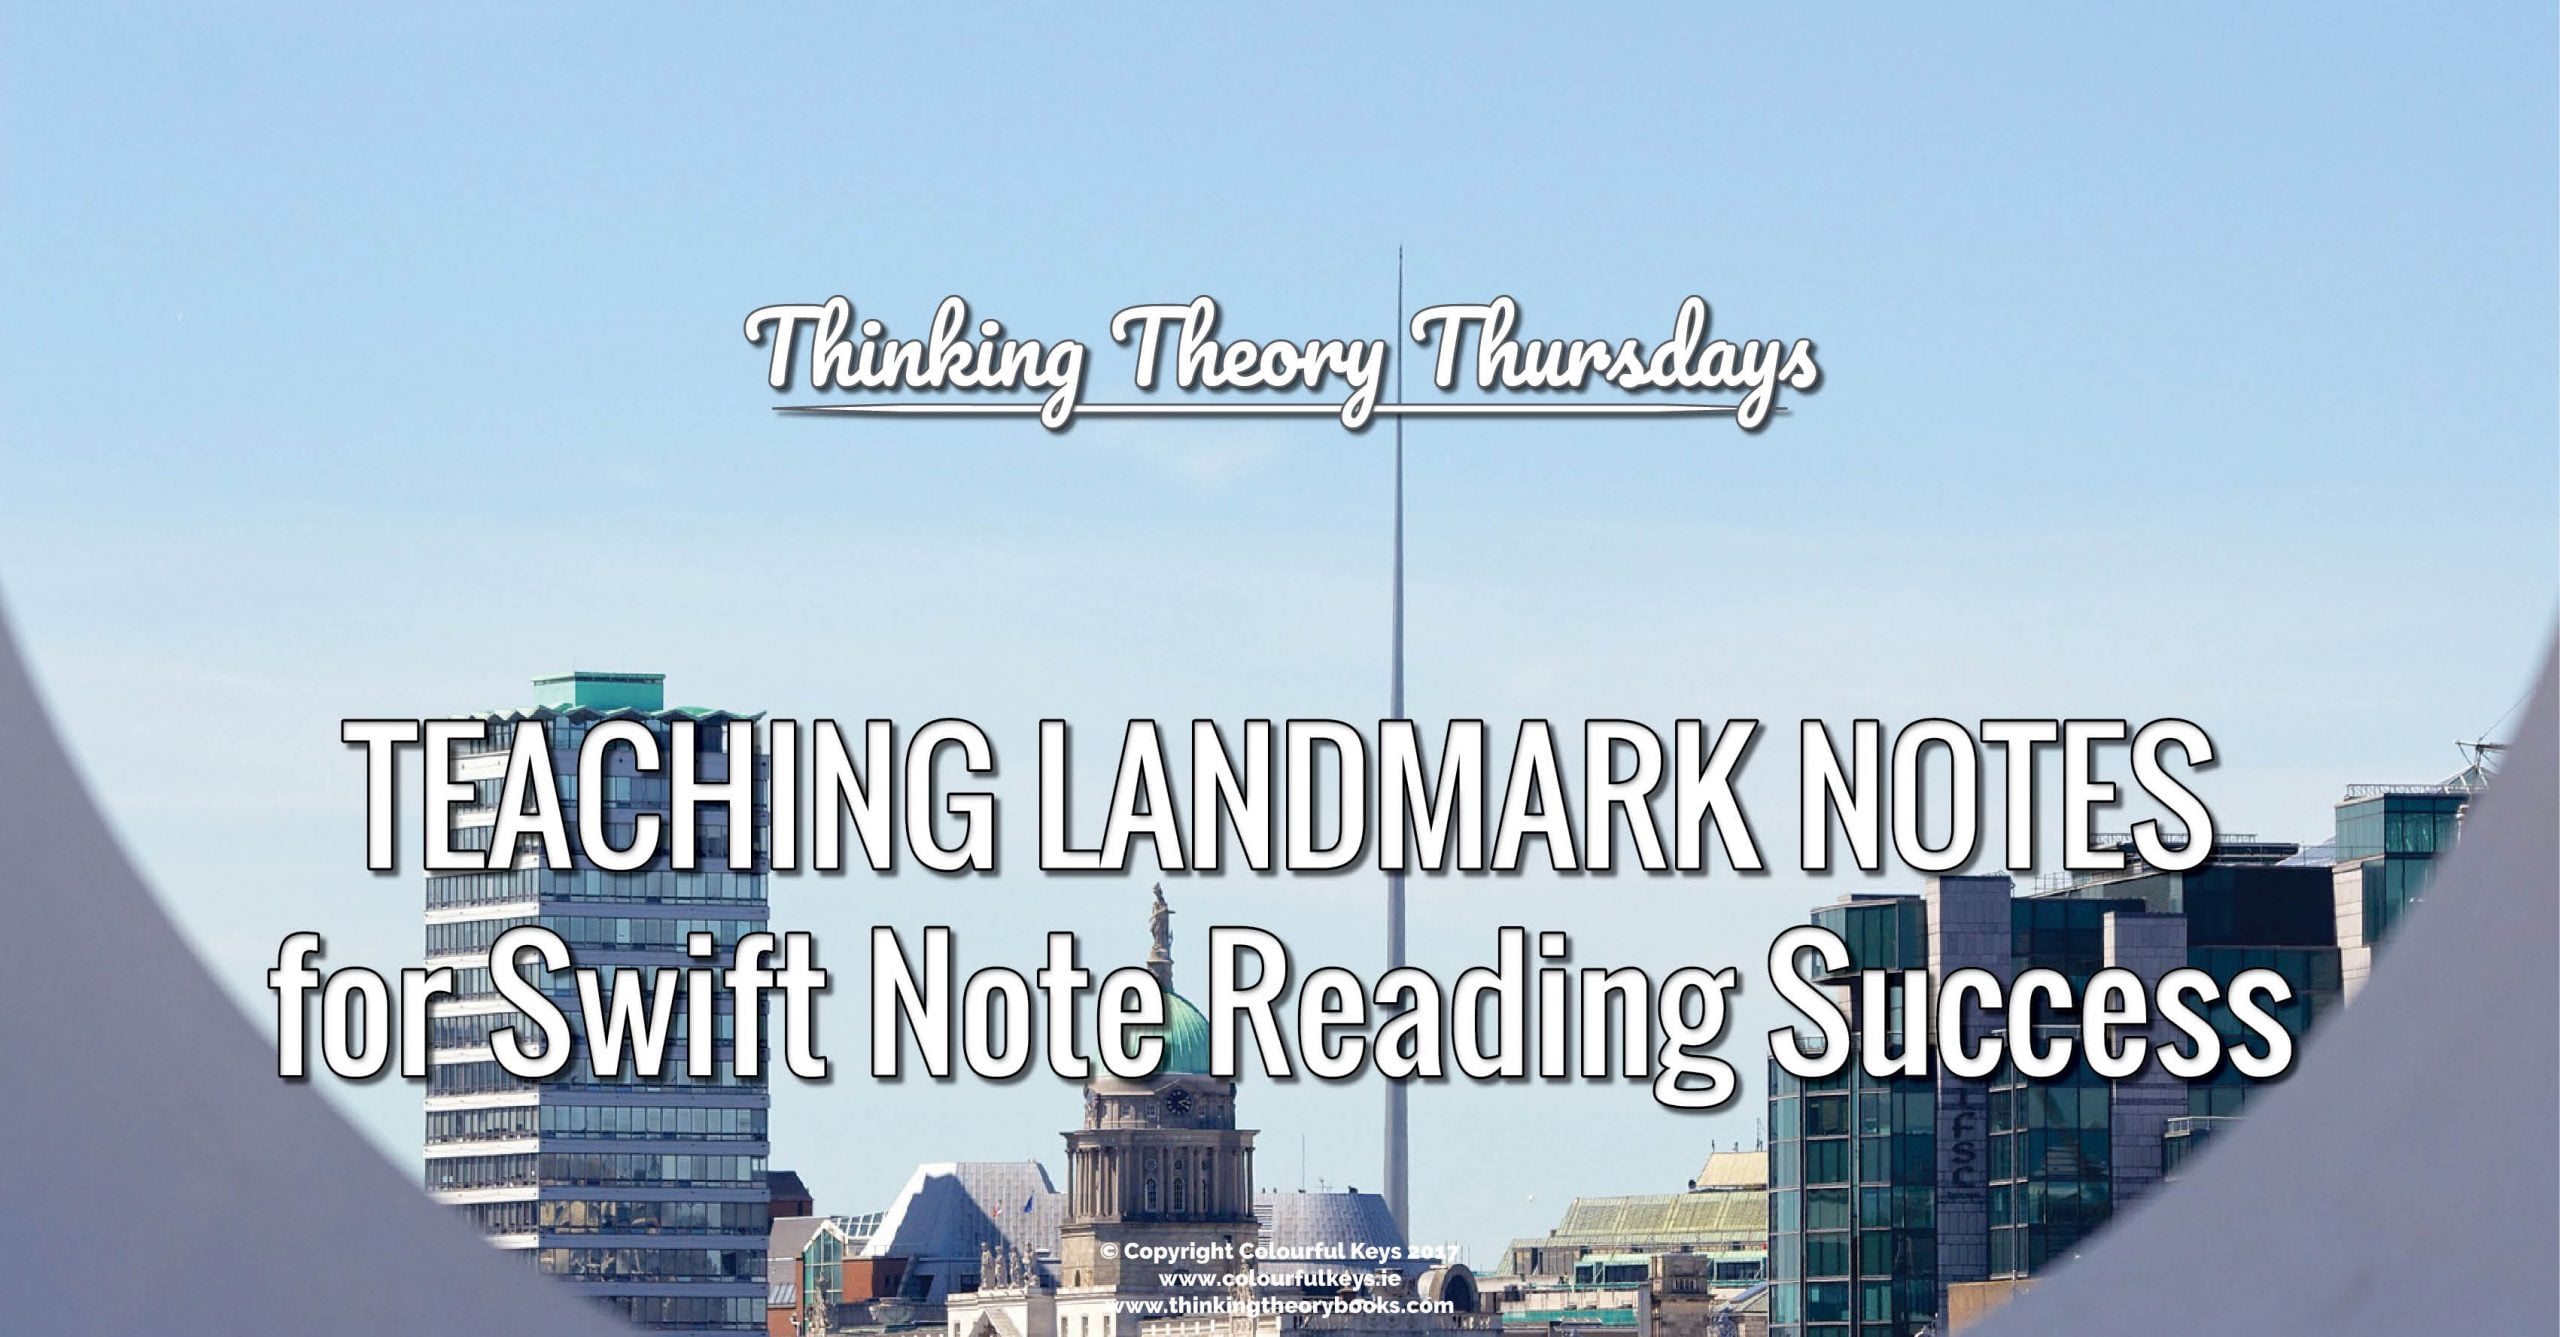 How to teach the landmark notes